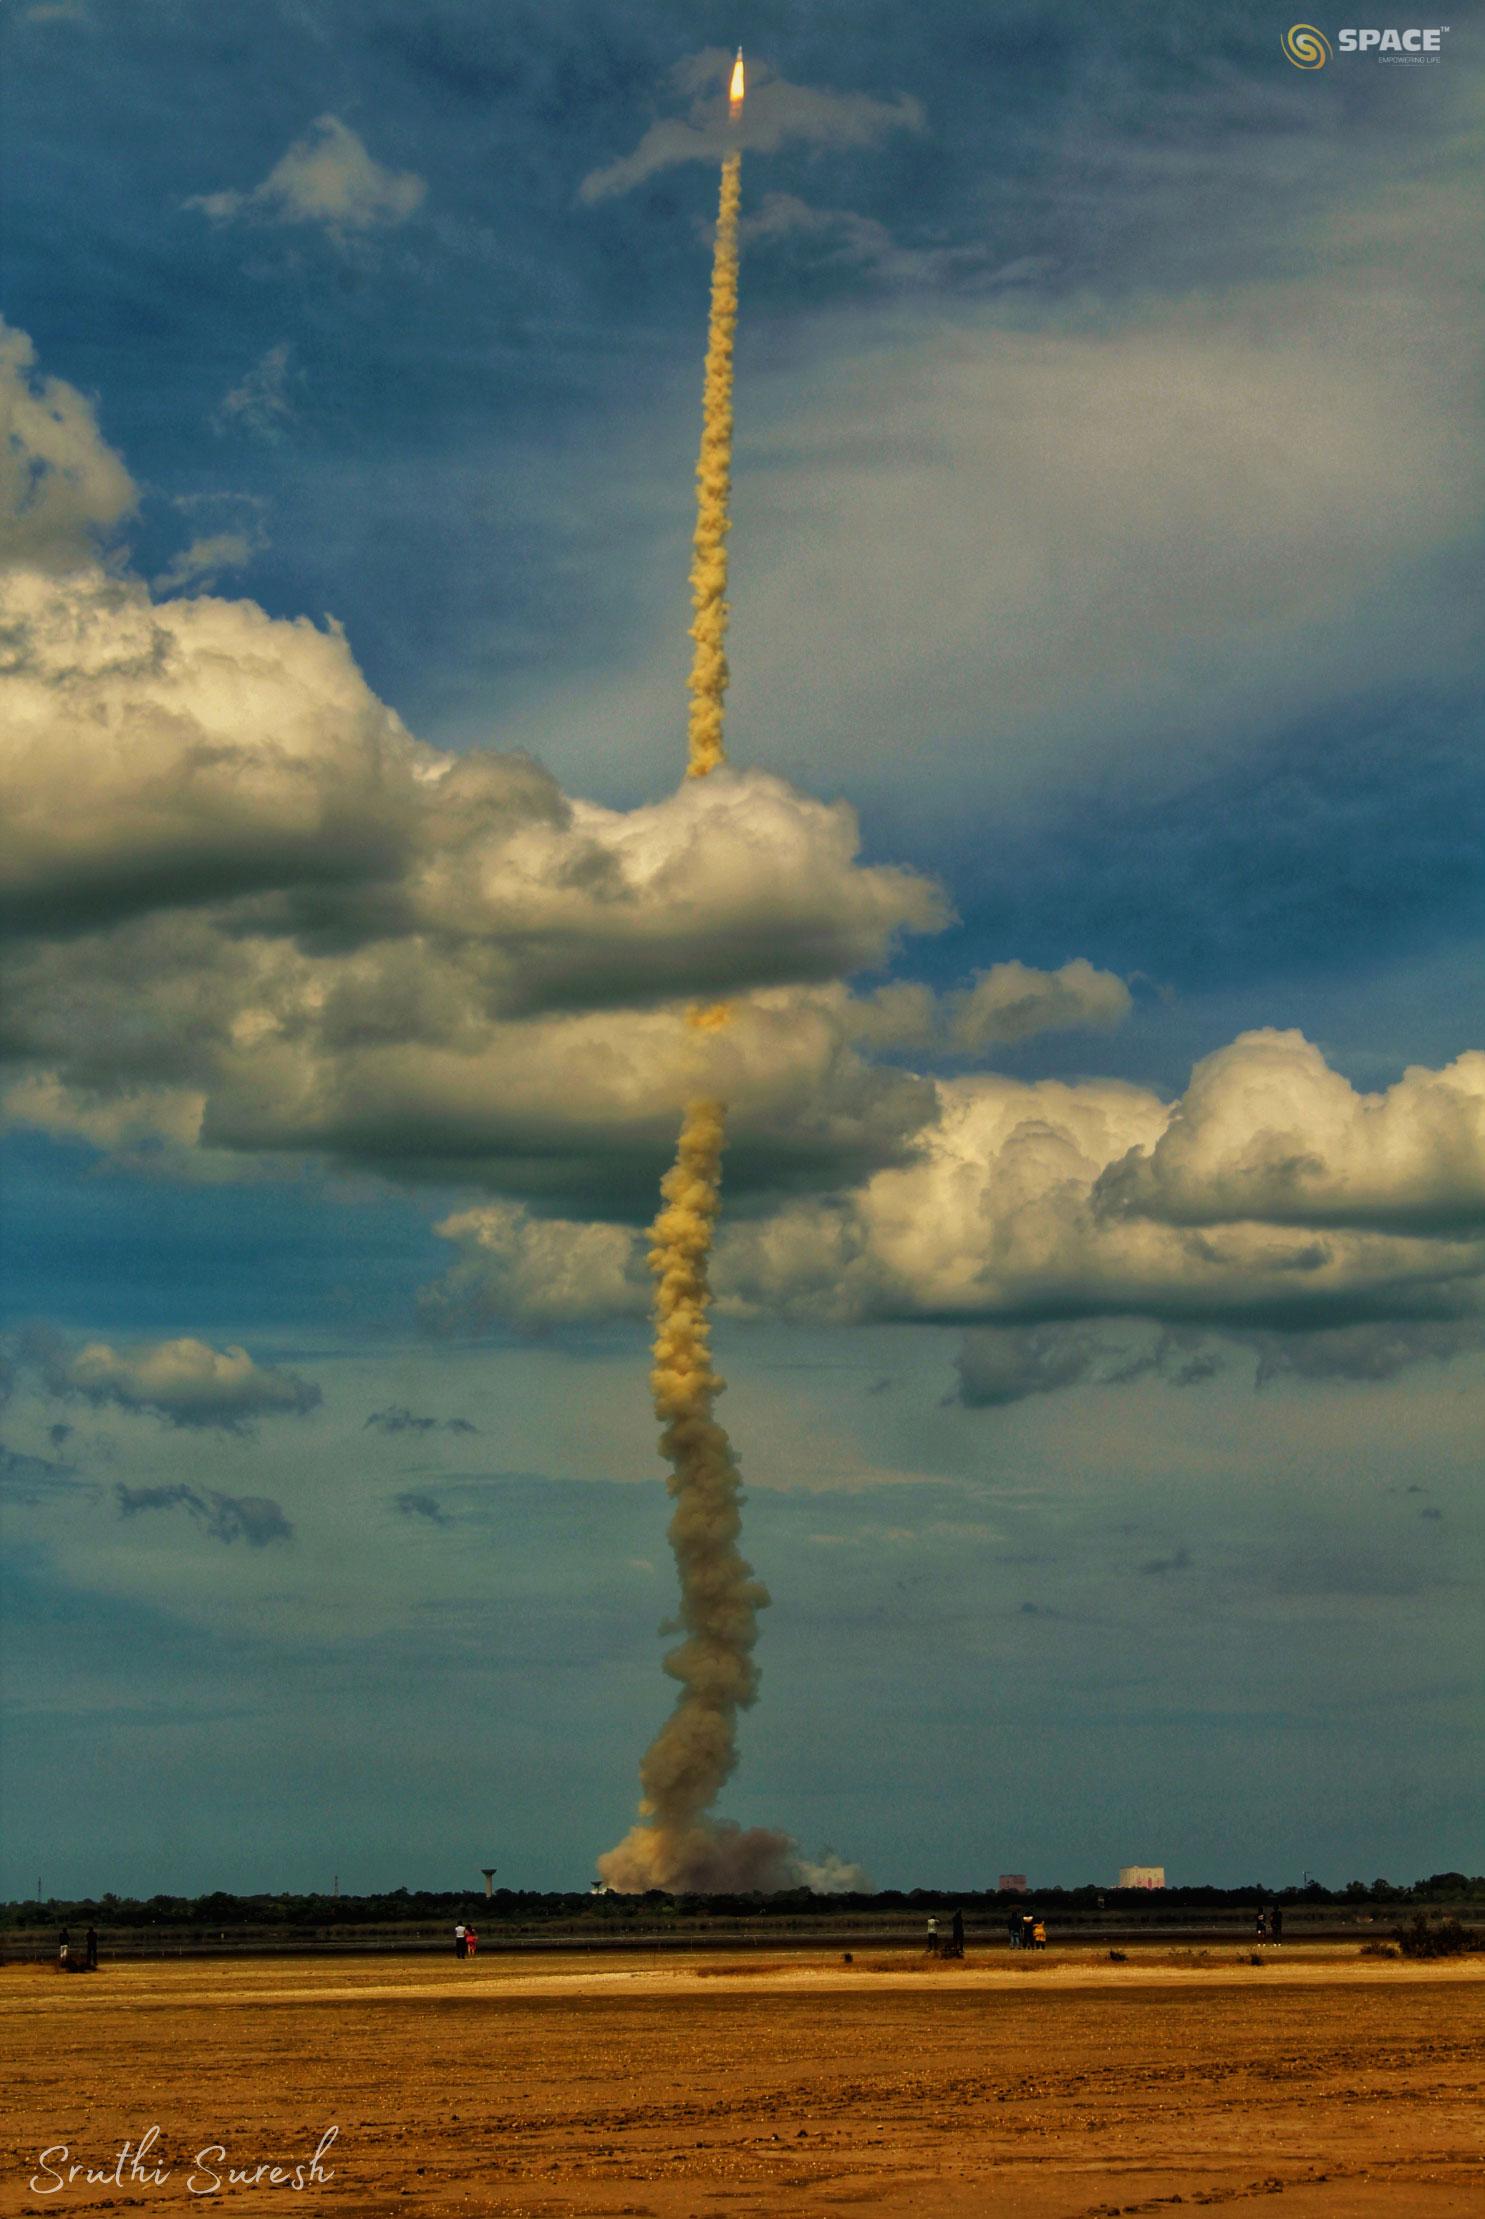 يُرى صاروخٌ بعد الإقلاع بعامود دخّانٍ طويل. التُقِطَ الصاروخ قبالة سماءٍ زرقاء وقد عبر من خلال مجموعة سُحُب. في المُقدِّمة يوجد حقلٌ فارغٌ داكن اللون.